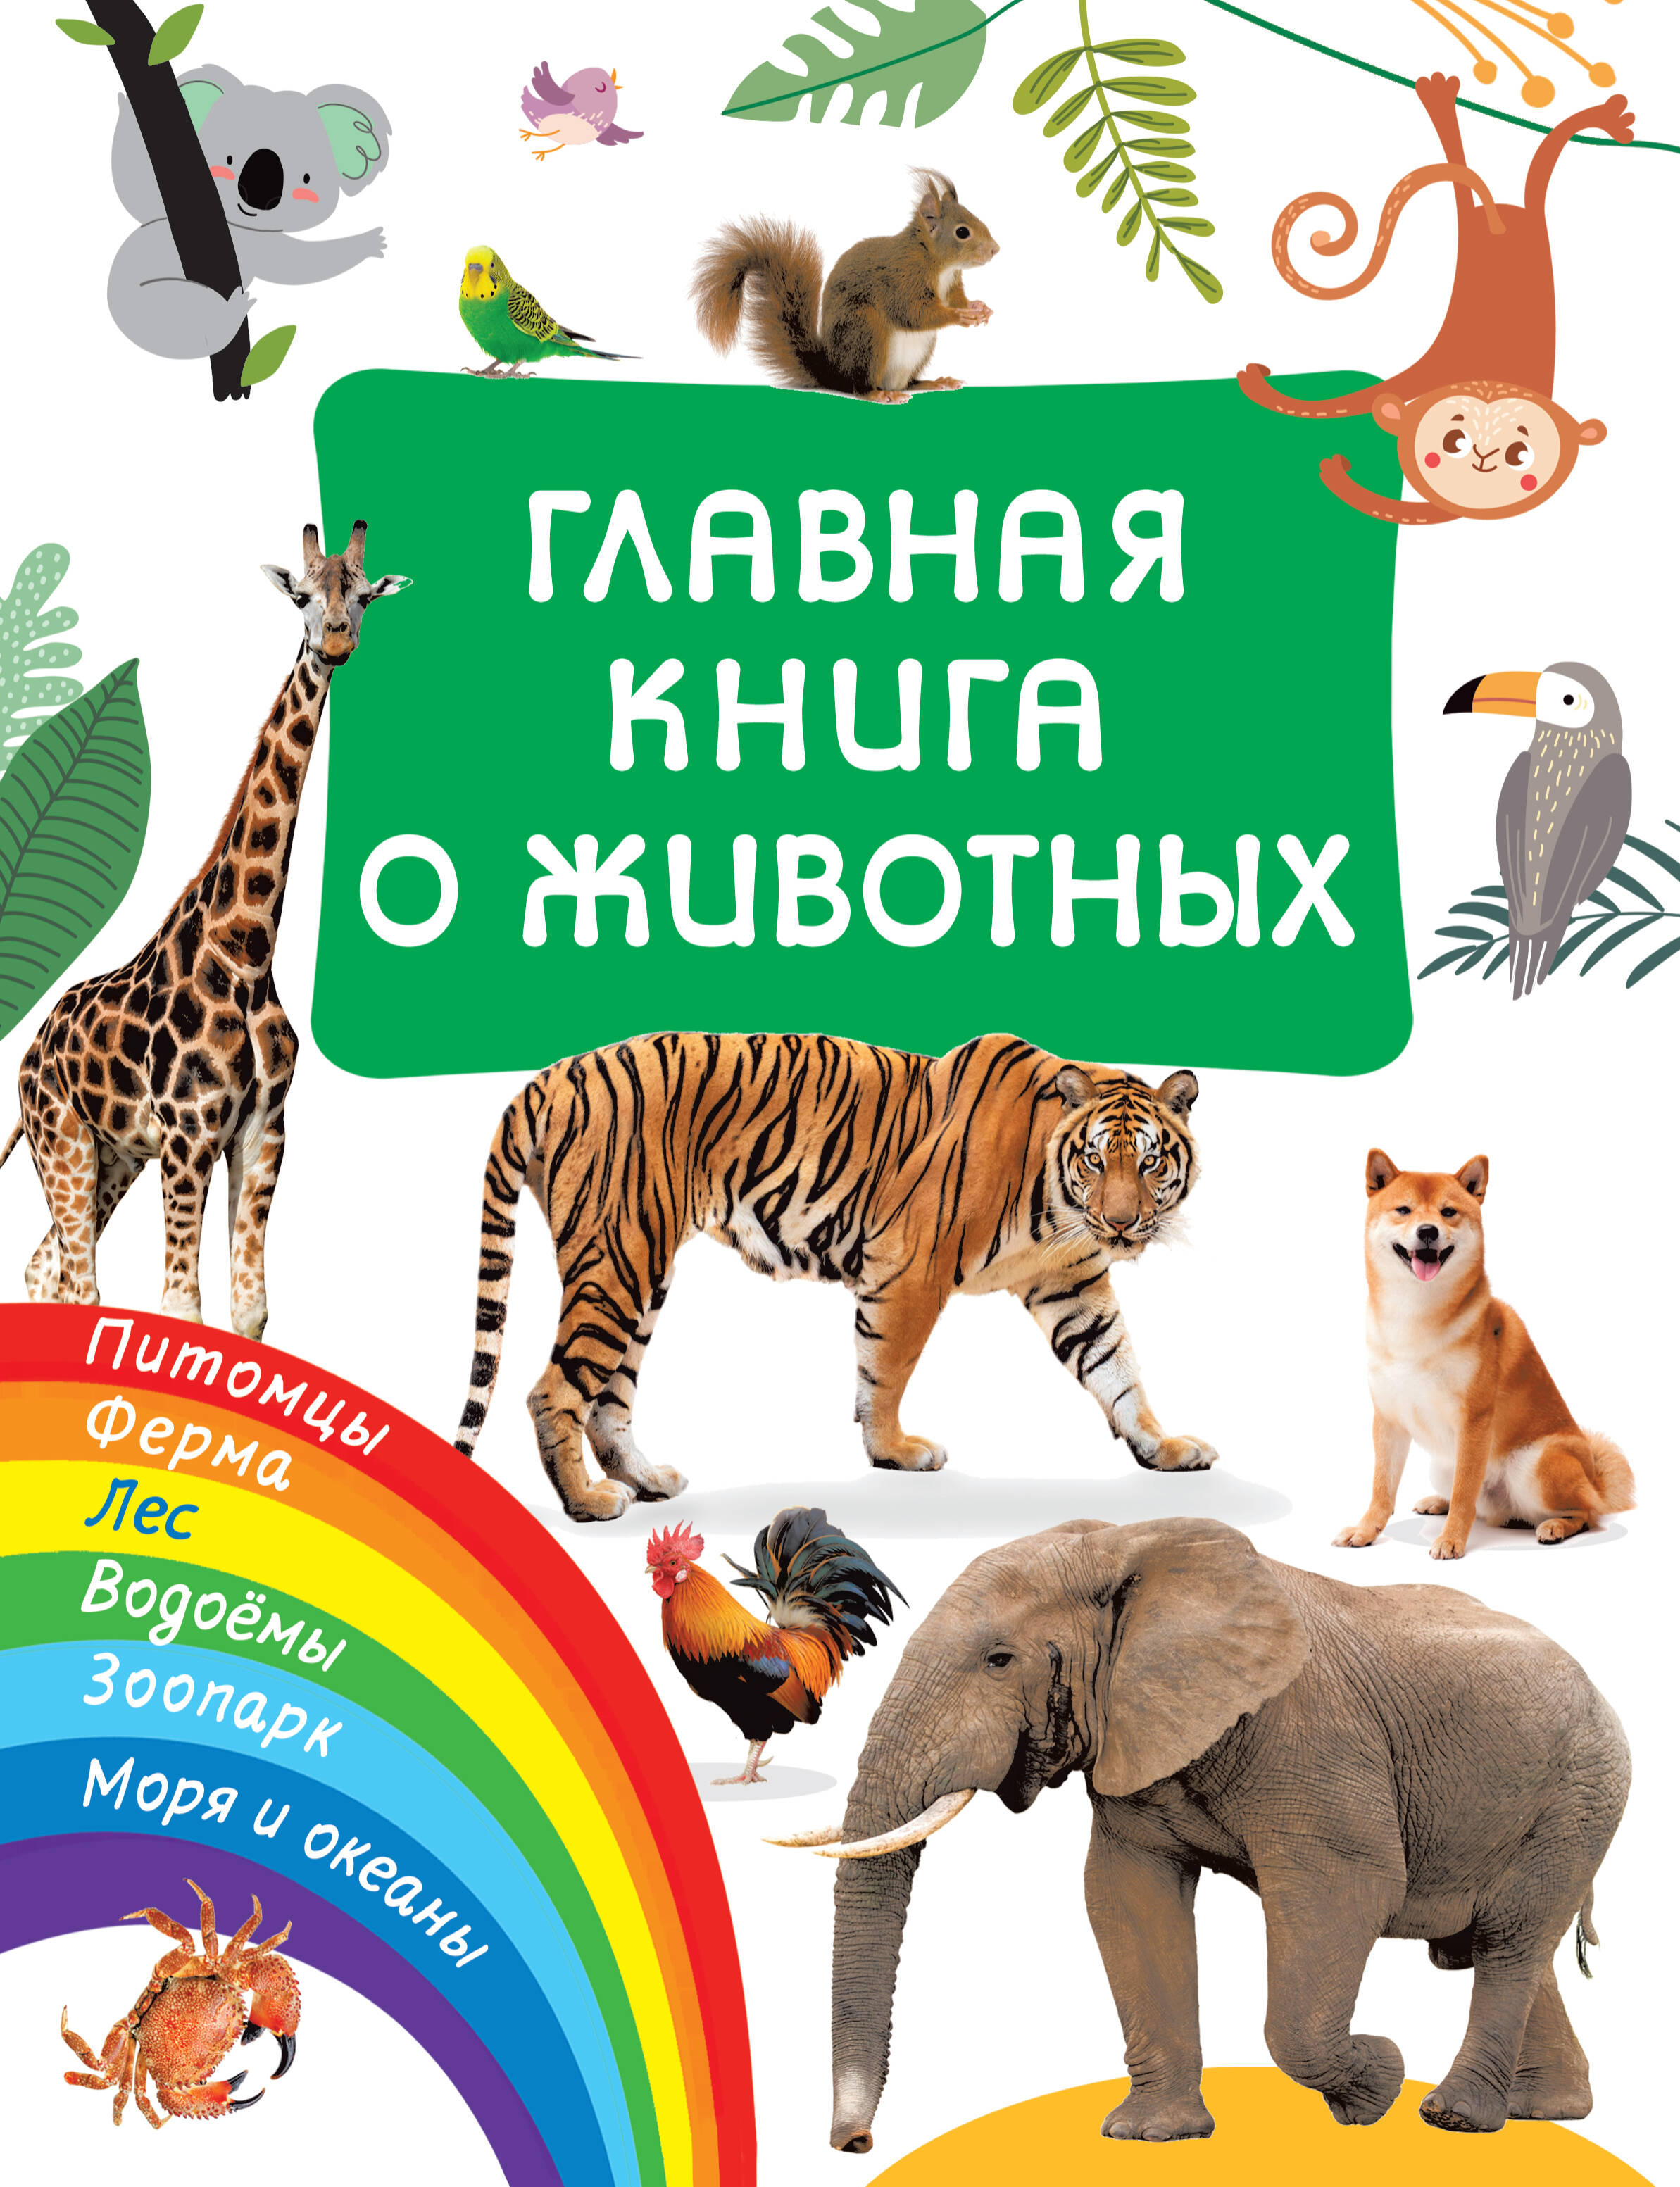 Главная книга о животных книга детская с животными в твердом переплете для раннего развития